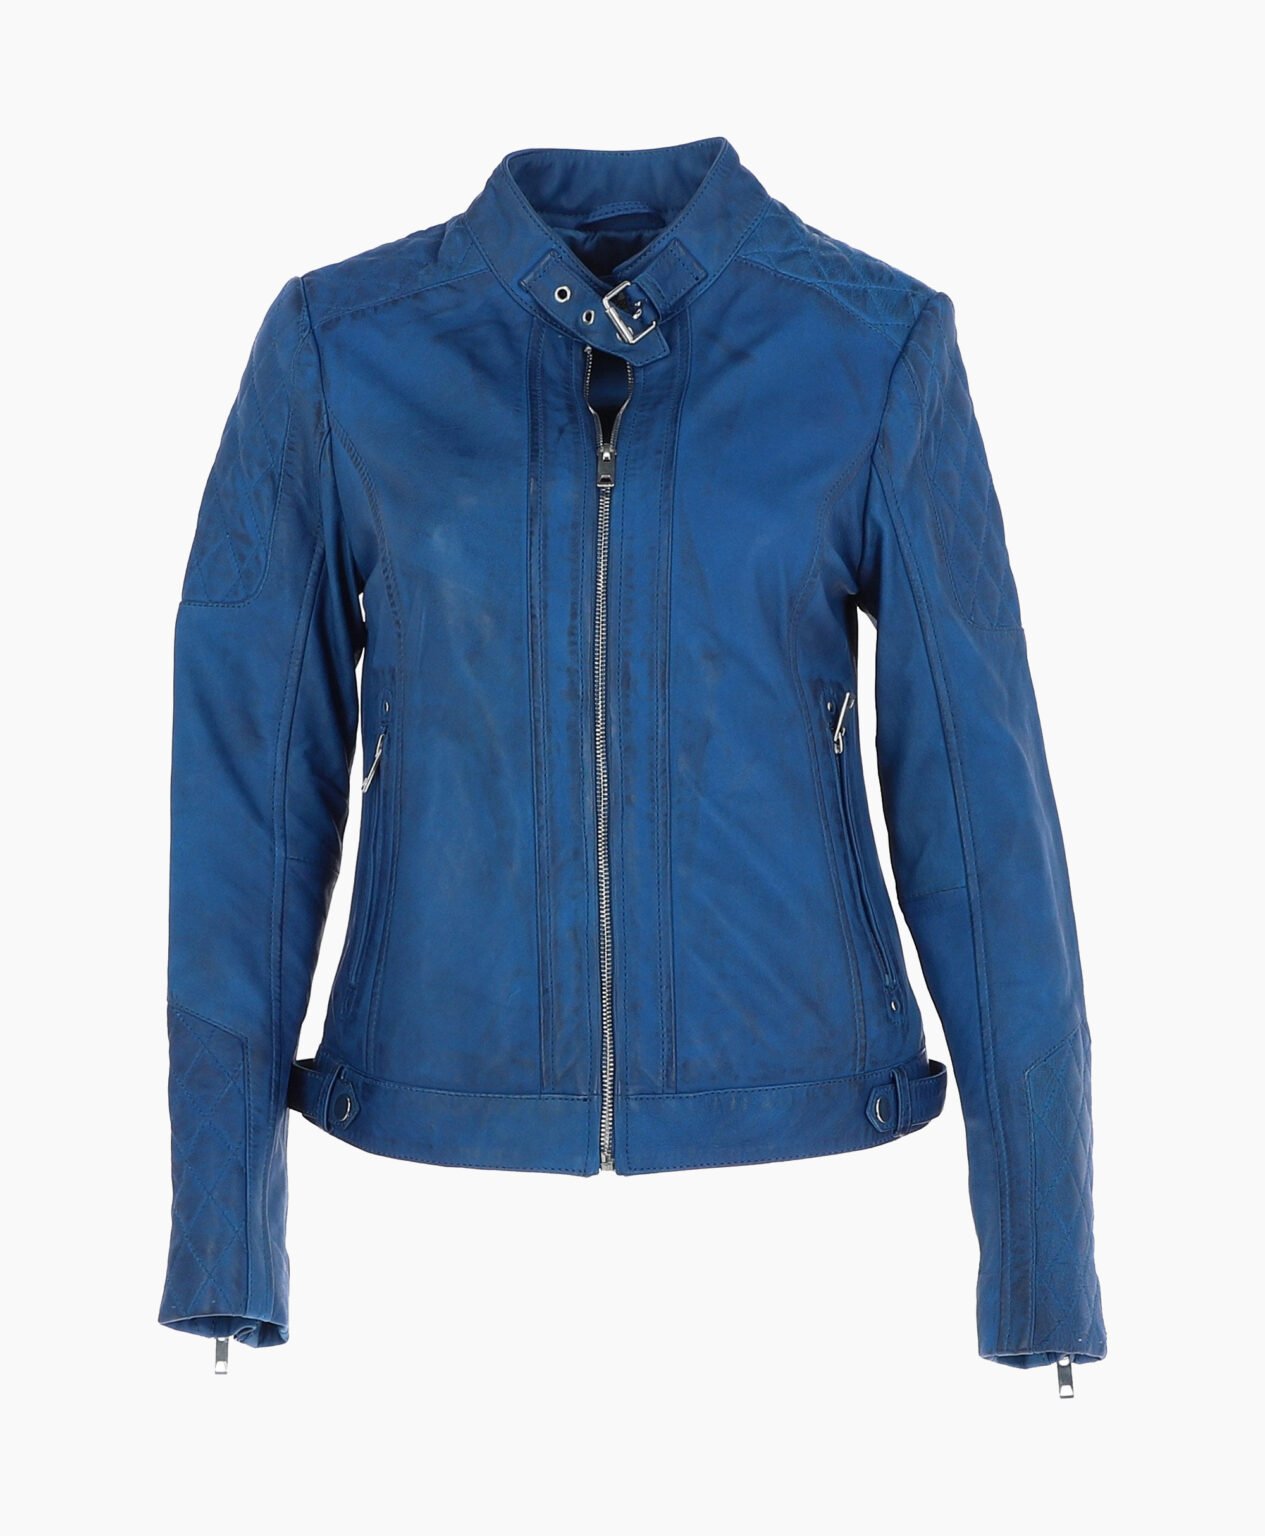 vogue-jacket-leather-jacket-blue-malibu-image200